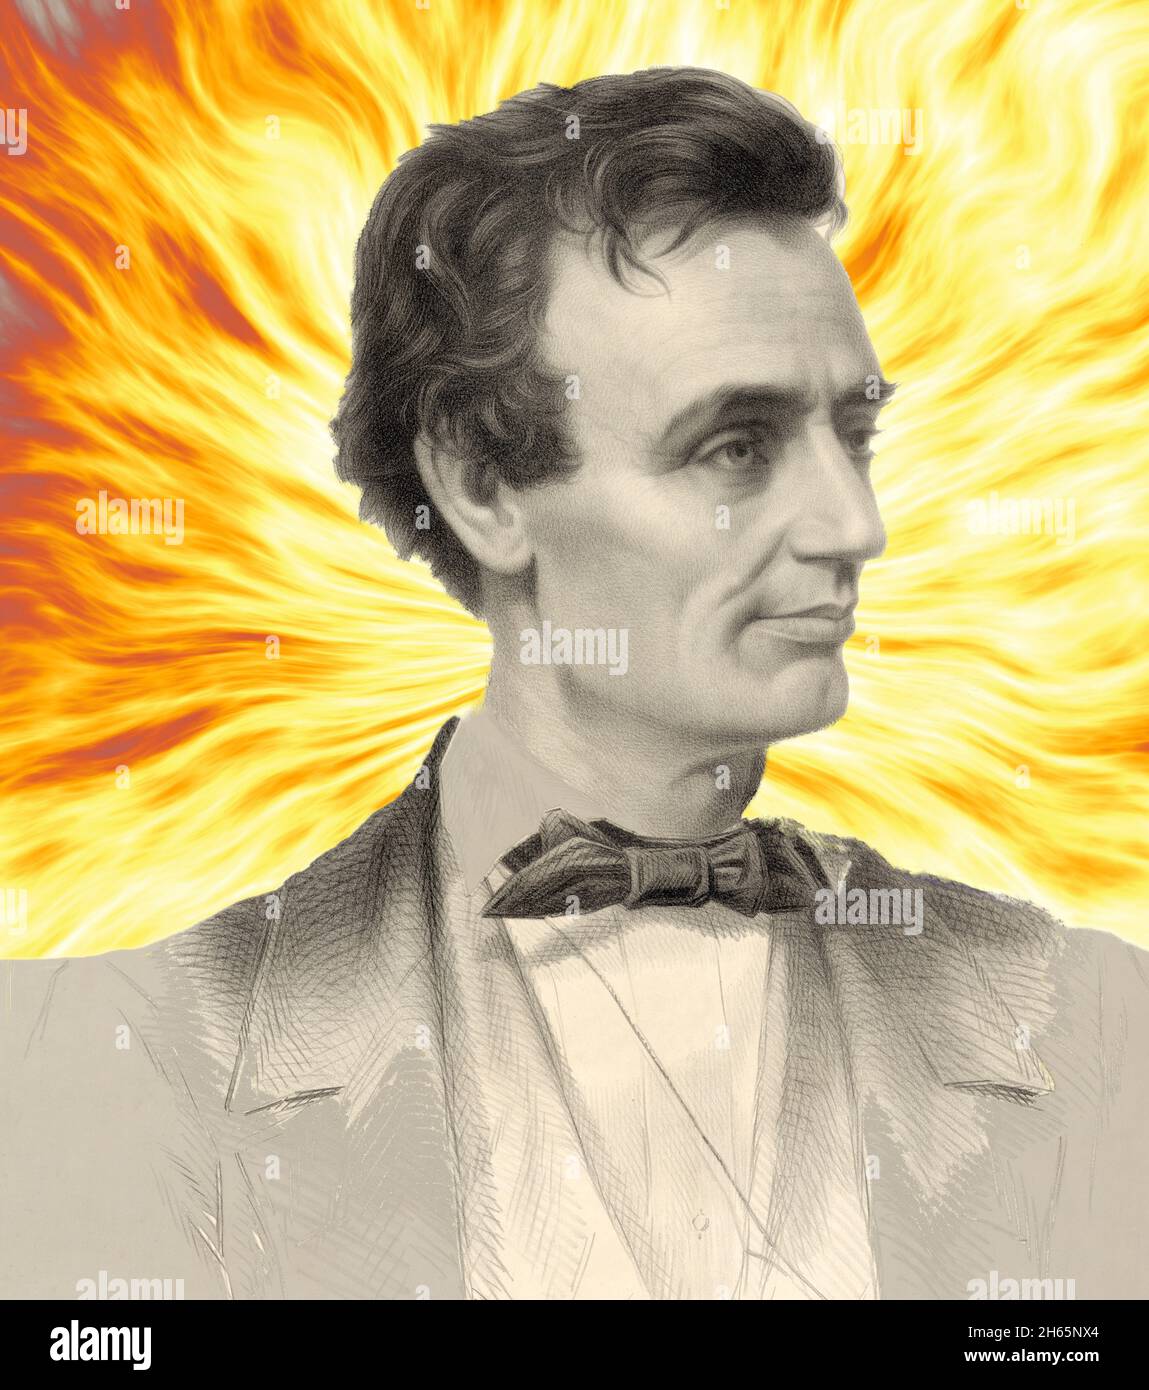 Gemischtes Medienportrait eines jungen Abraham Lincoln vor feurigem Hintergrund Stockfoto